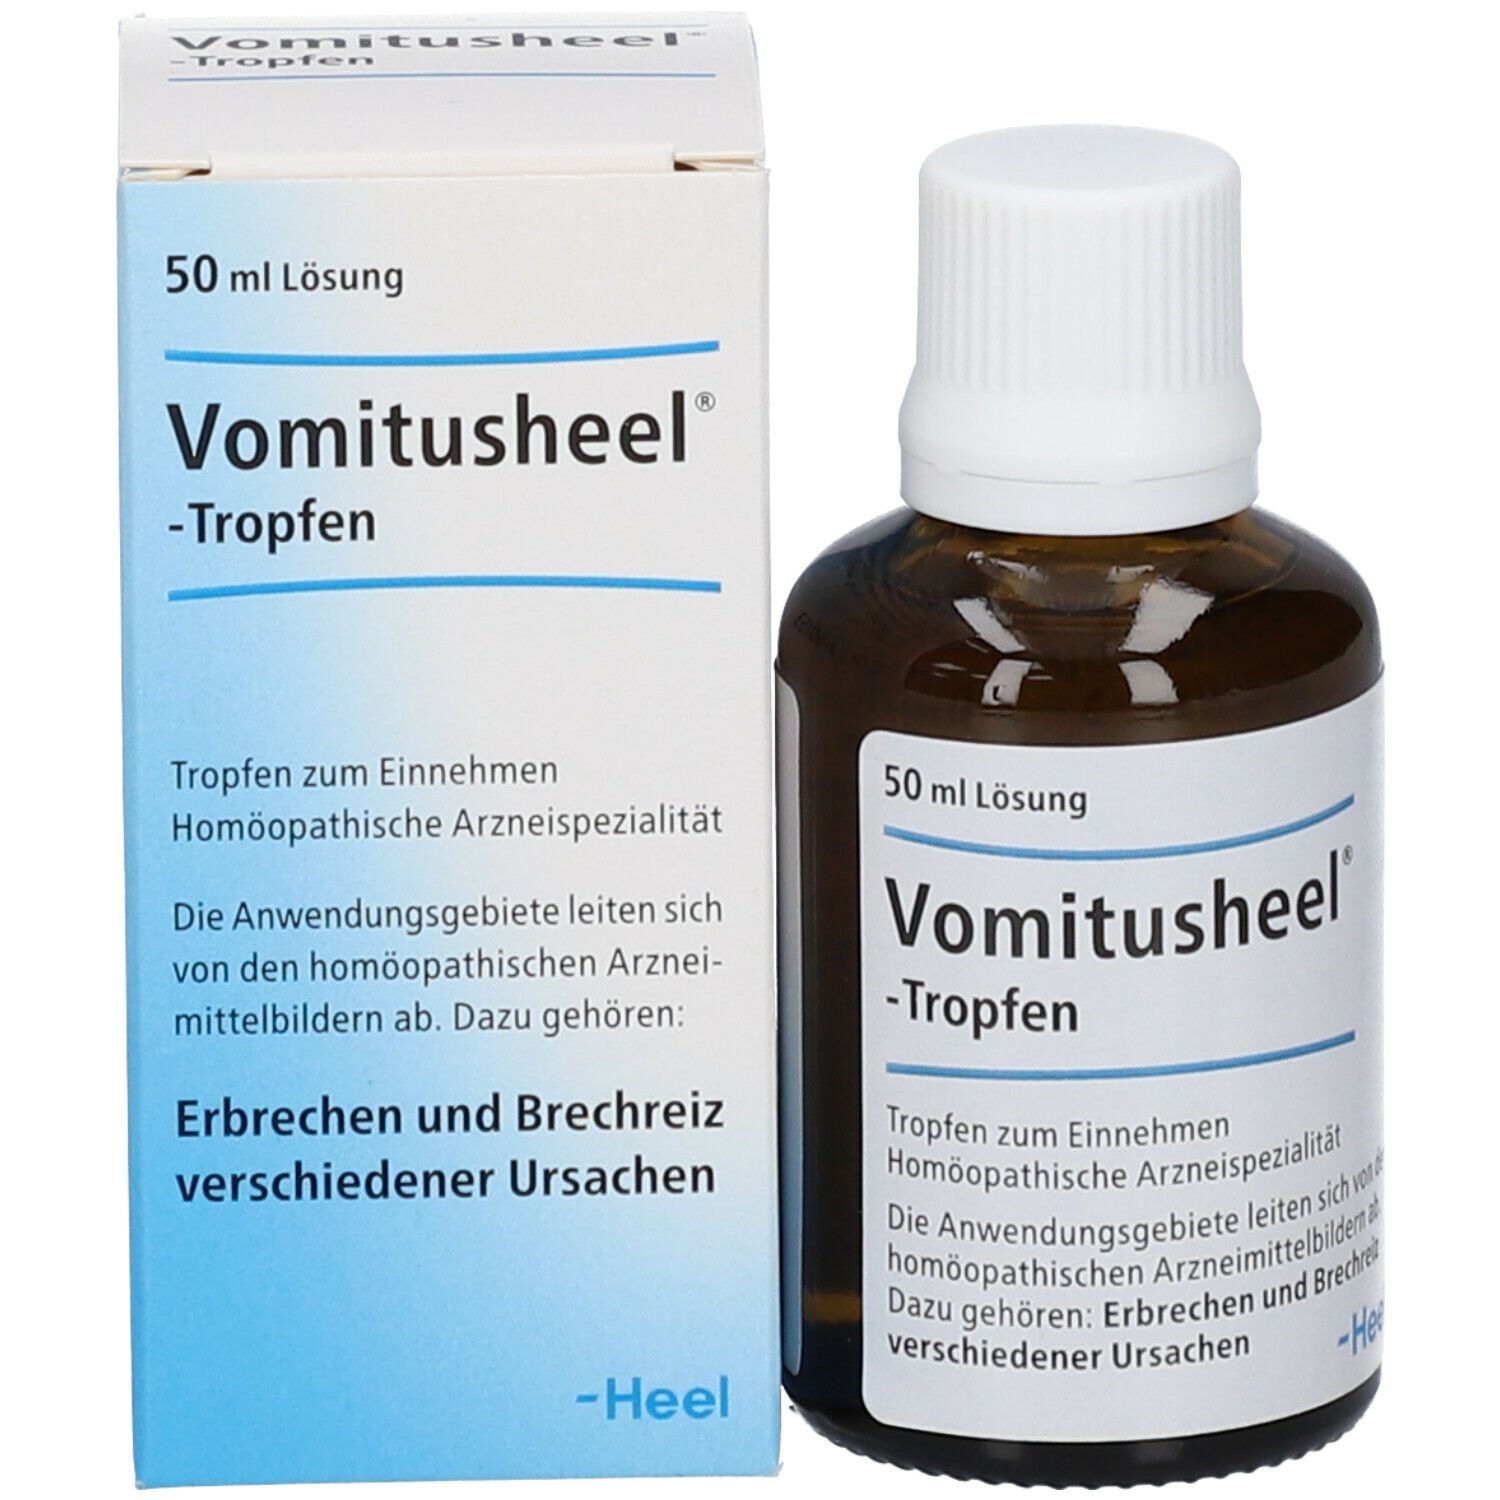 Vomitusheel®-Tropfen